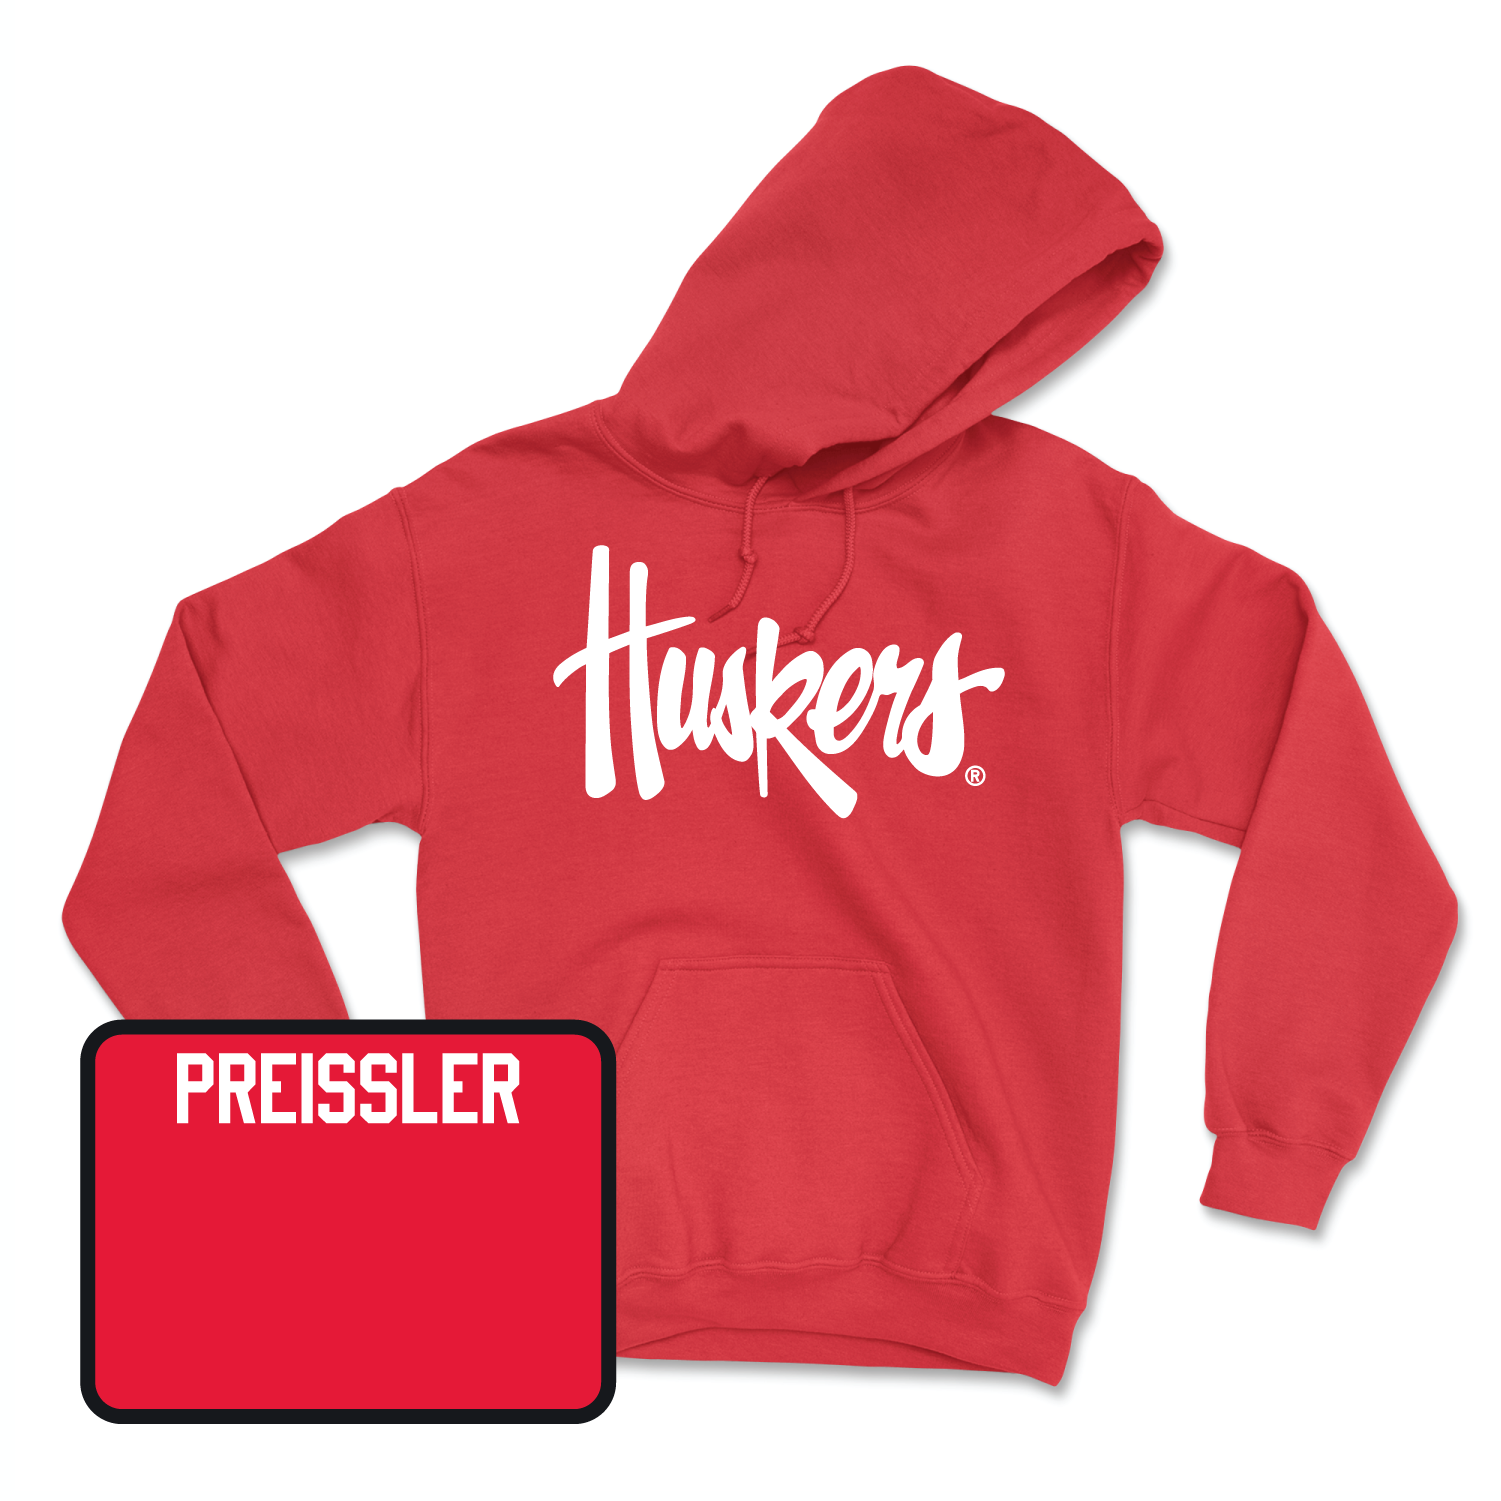 Red Track & Field Huskers Hoodie X-Large / Hannah Preissler